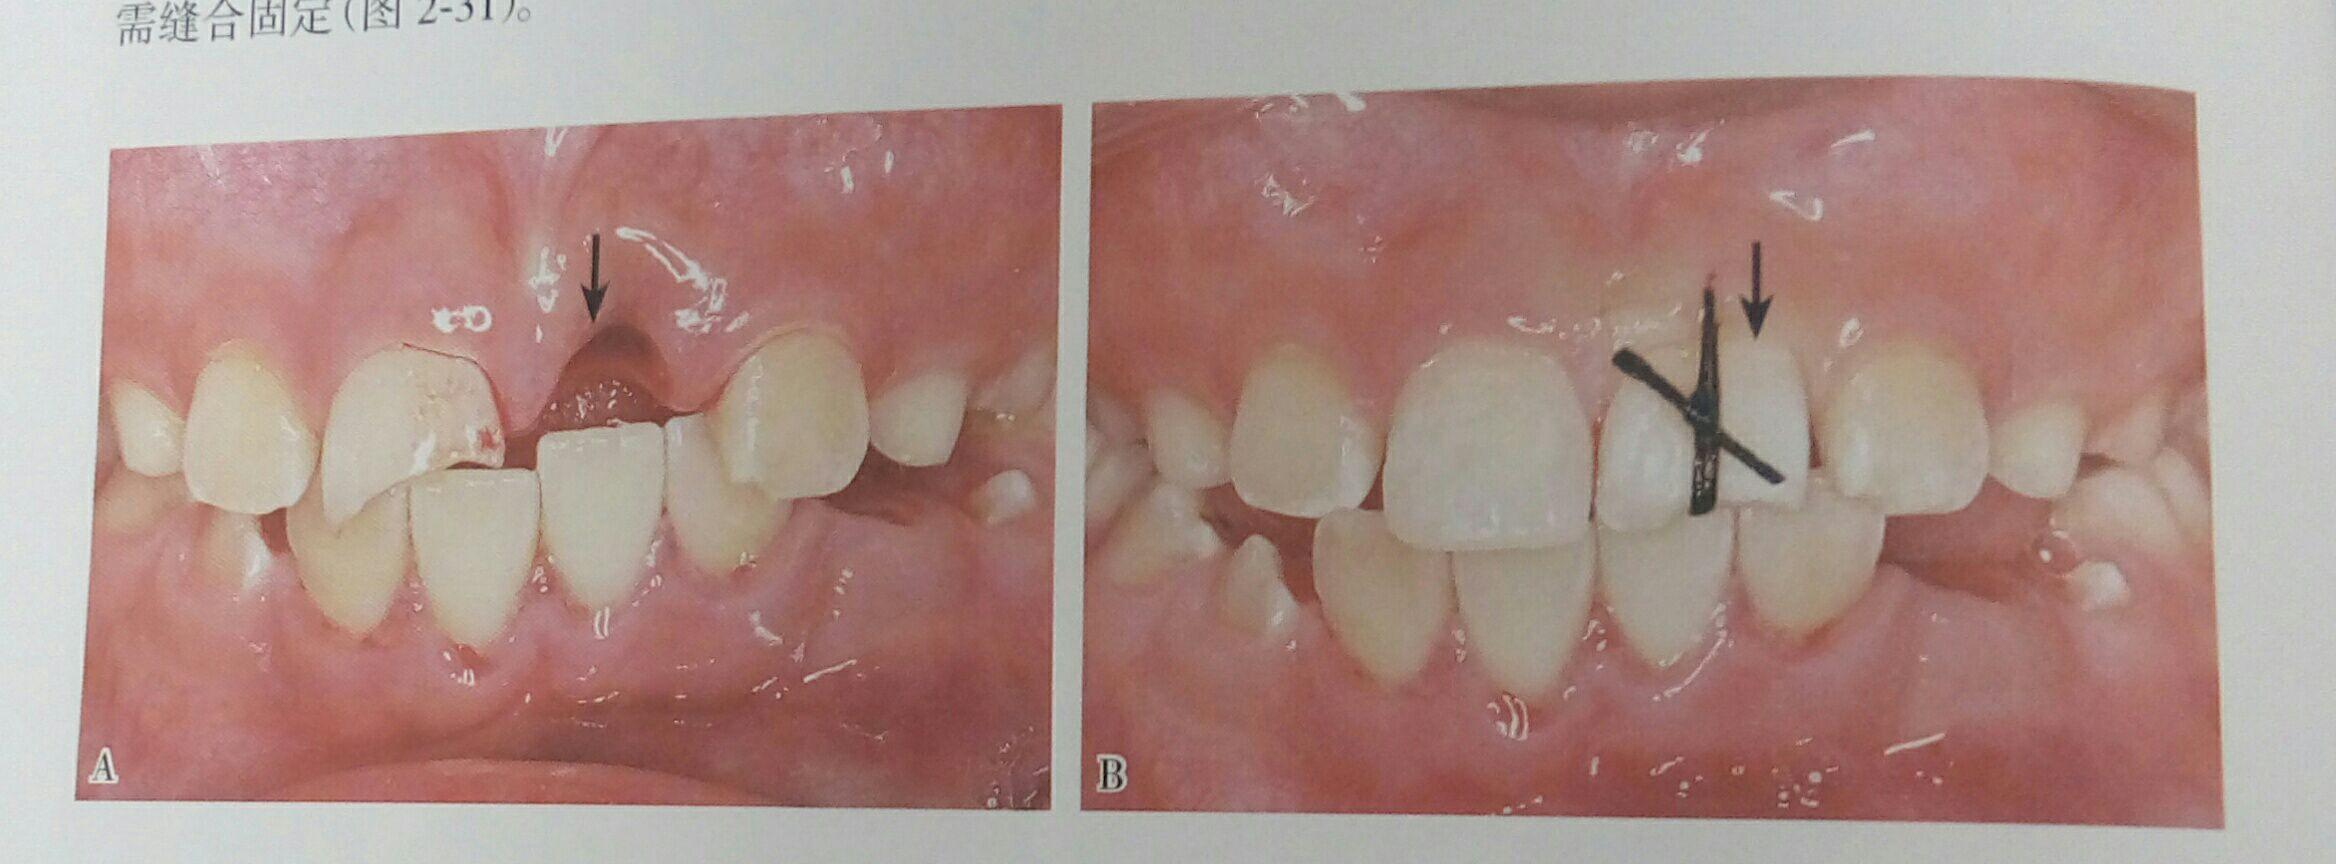 前牙外伤一周美塑树脂补牙一例 - 知乎